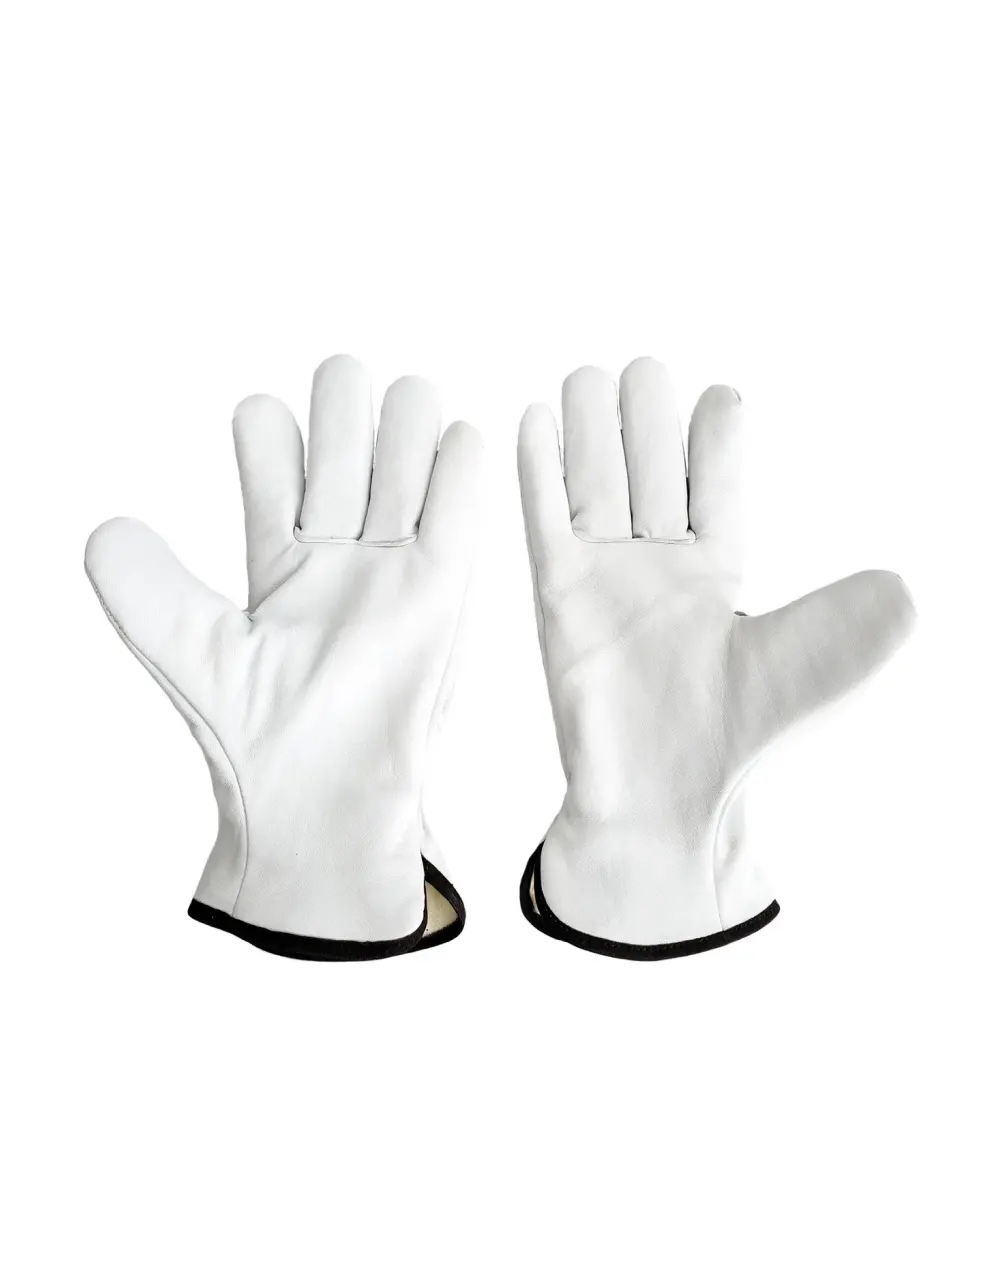 TECRON™ 3317 leather gloves